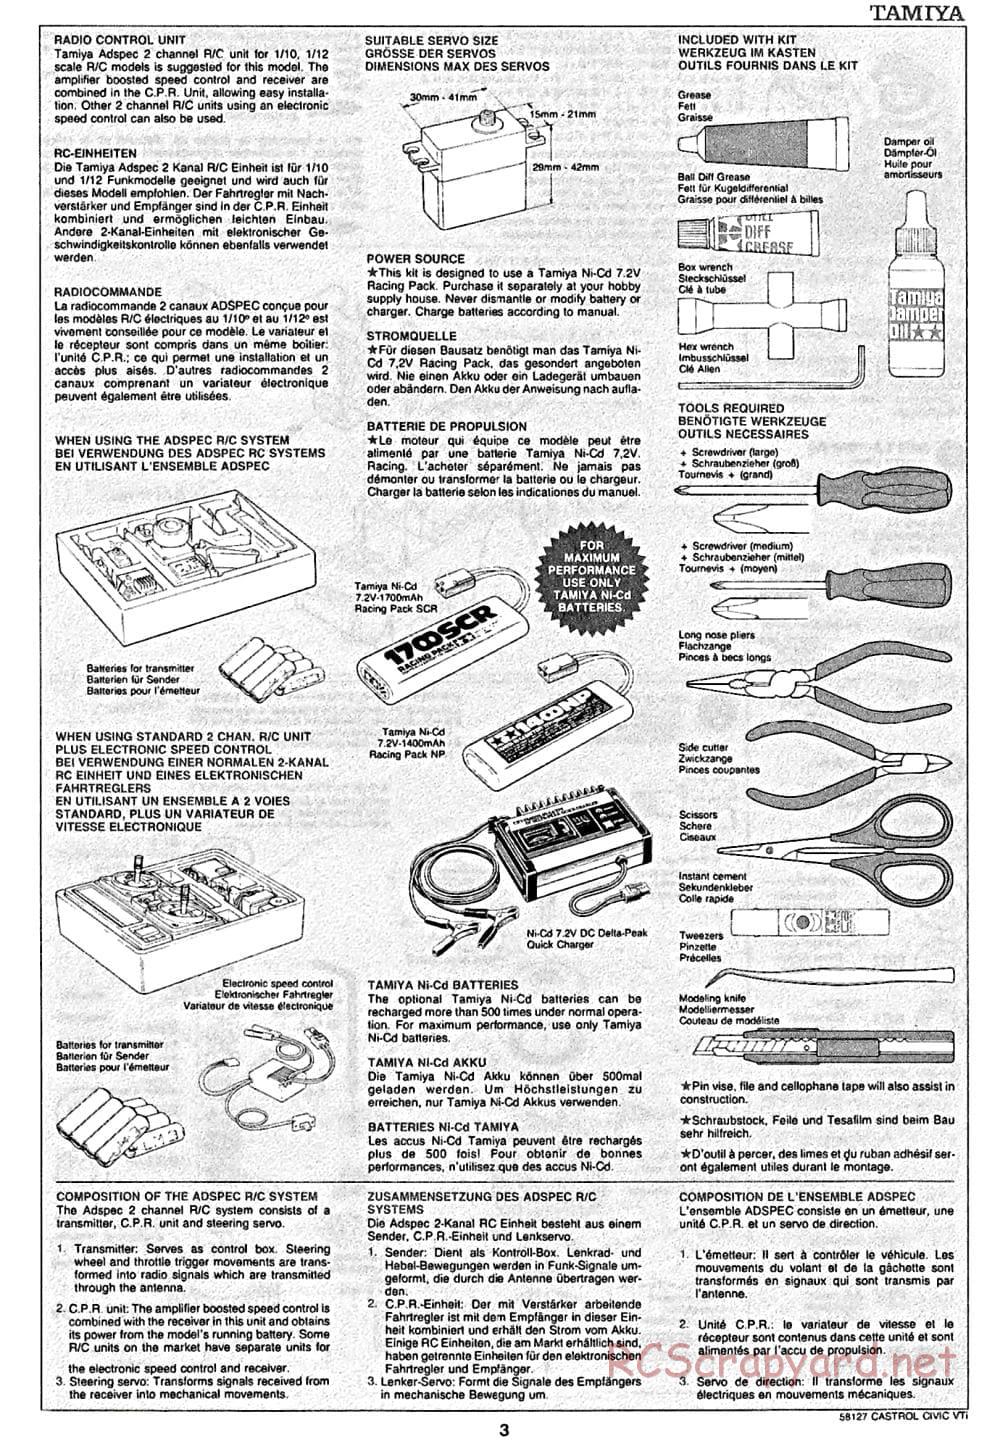 Tamiya - Castrol Honda Civic VTi - FF-01 Chassis - Manual - Page 3